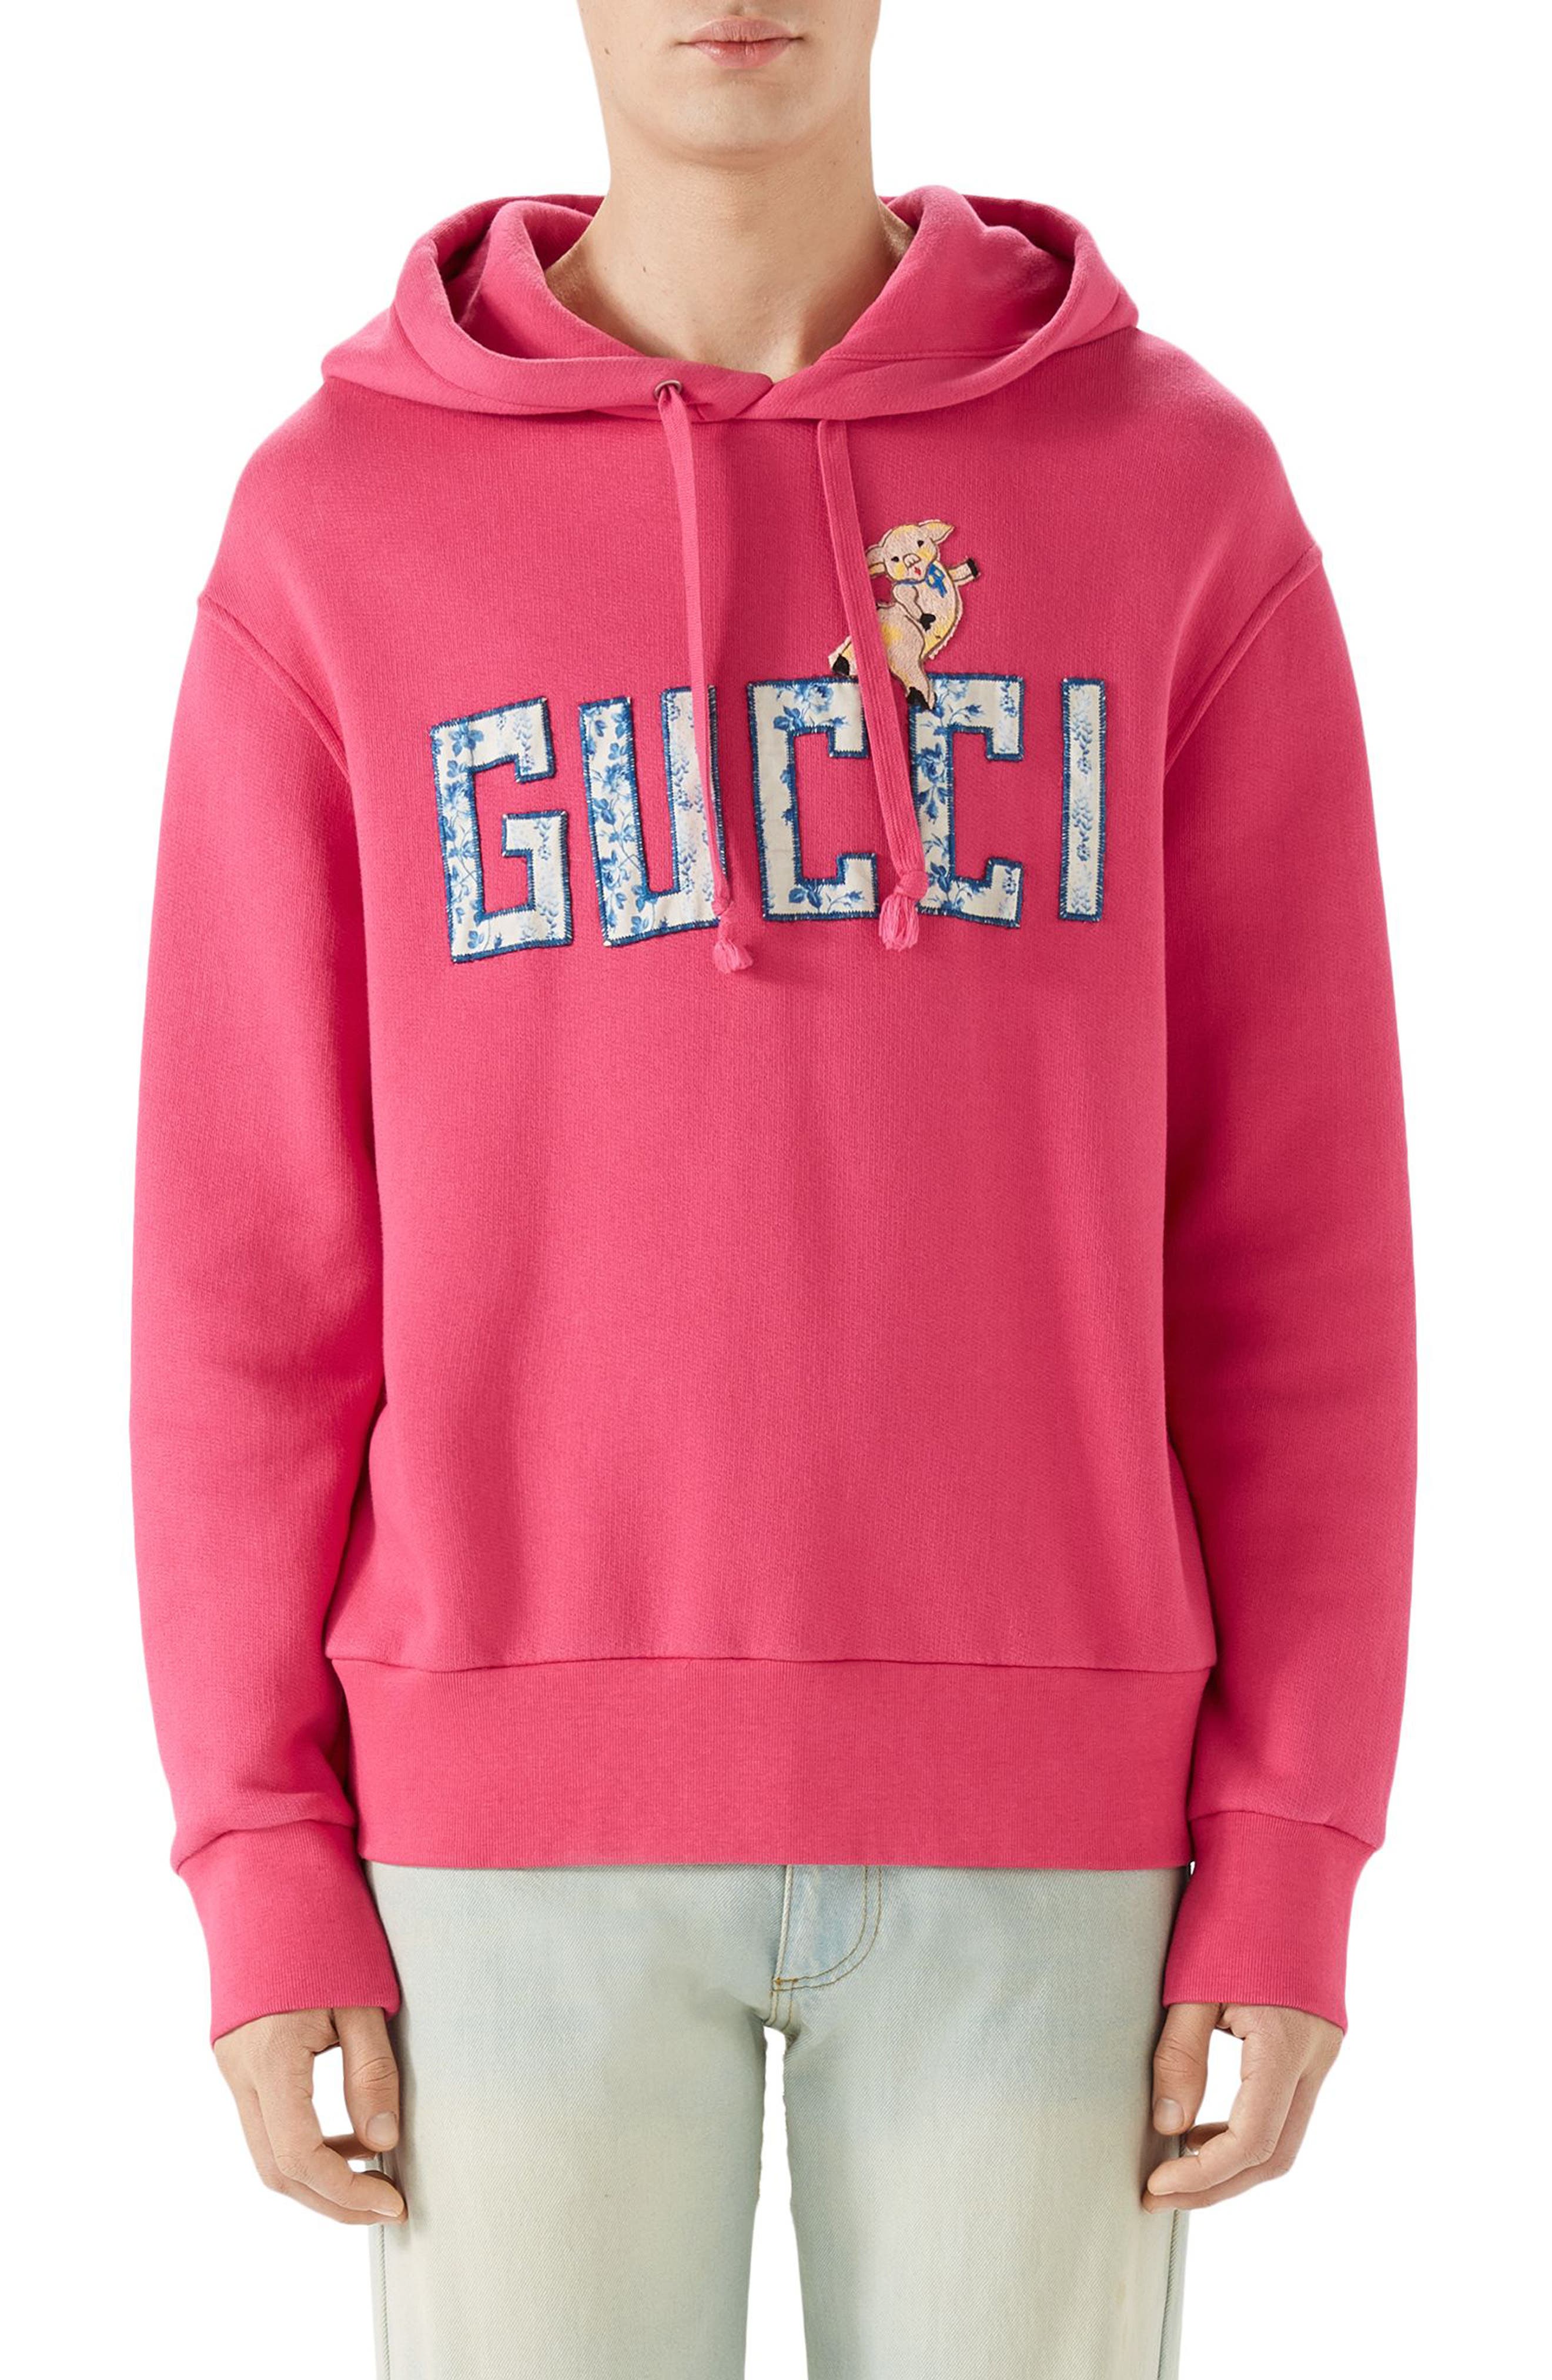 reebok classic hoodie mens pink